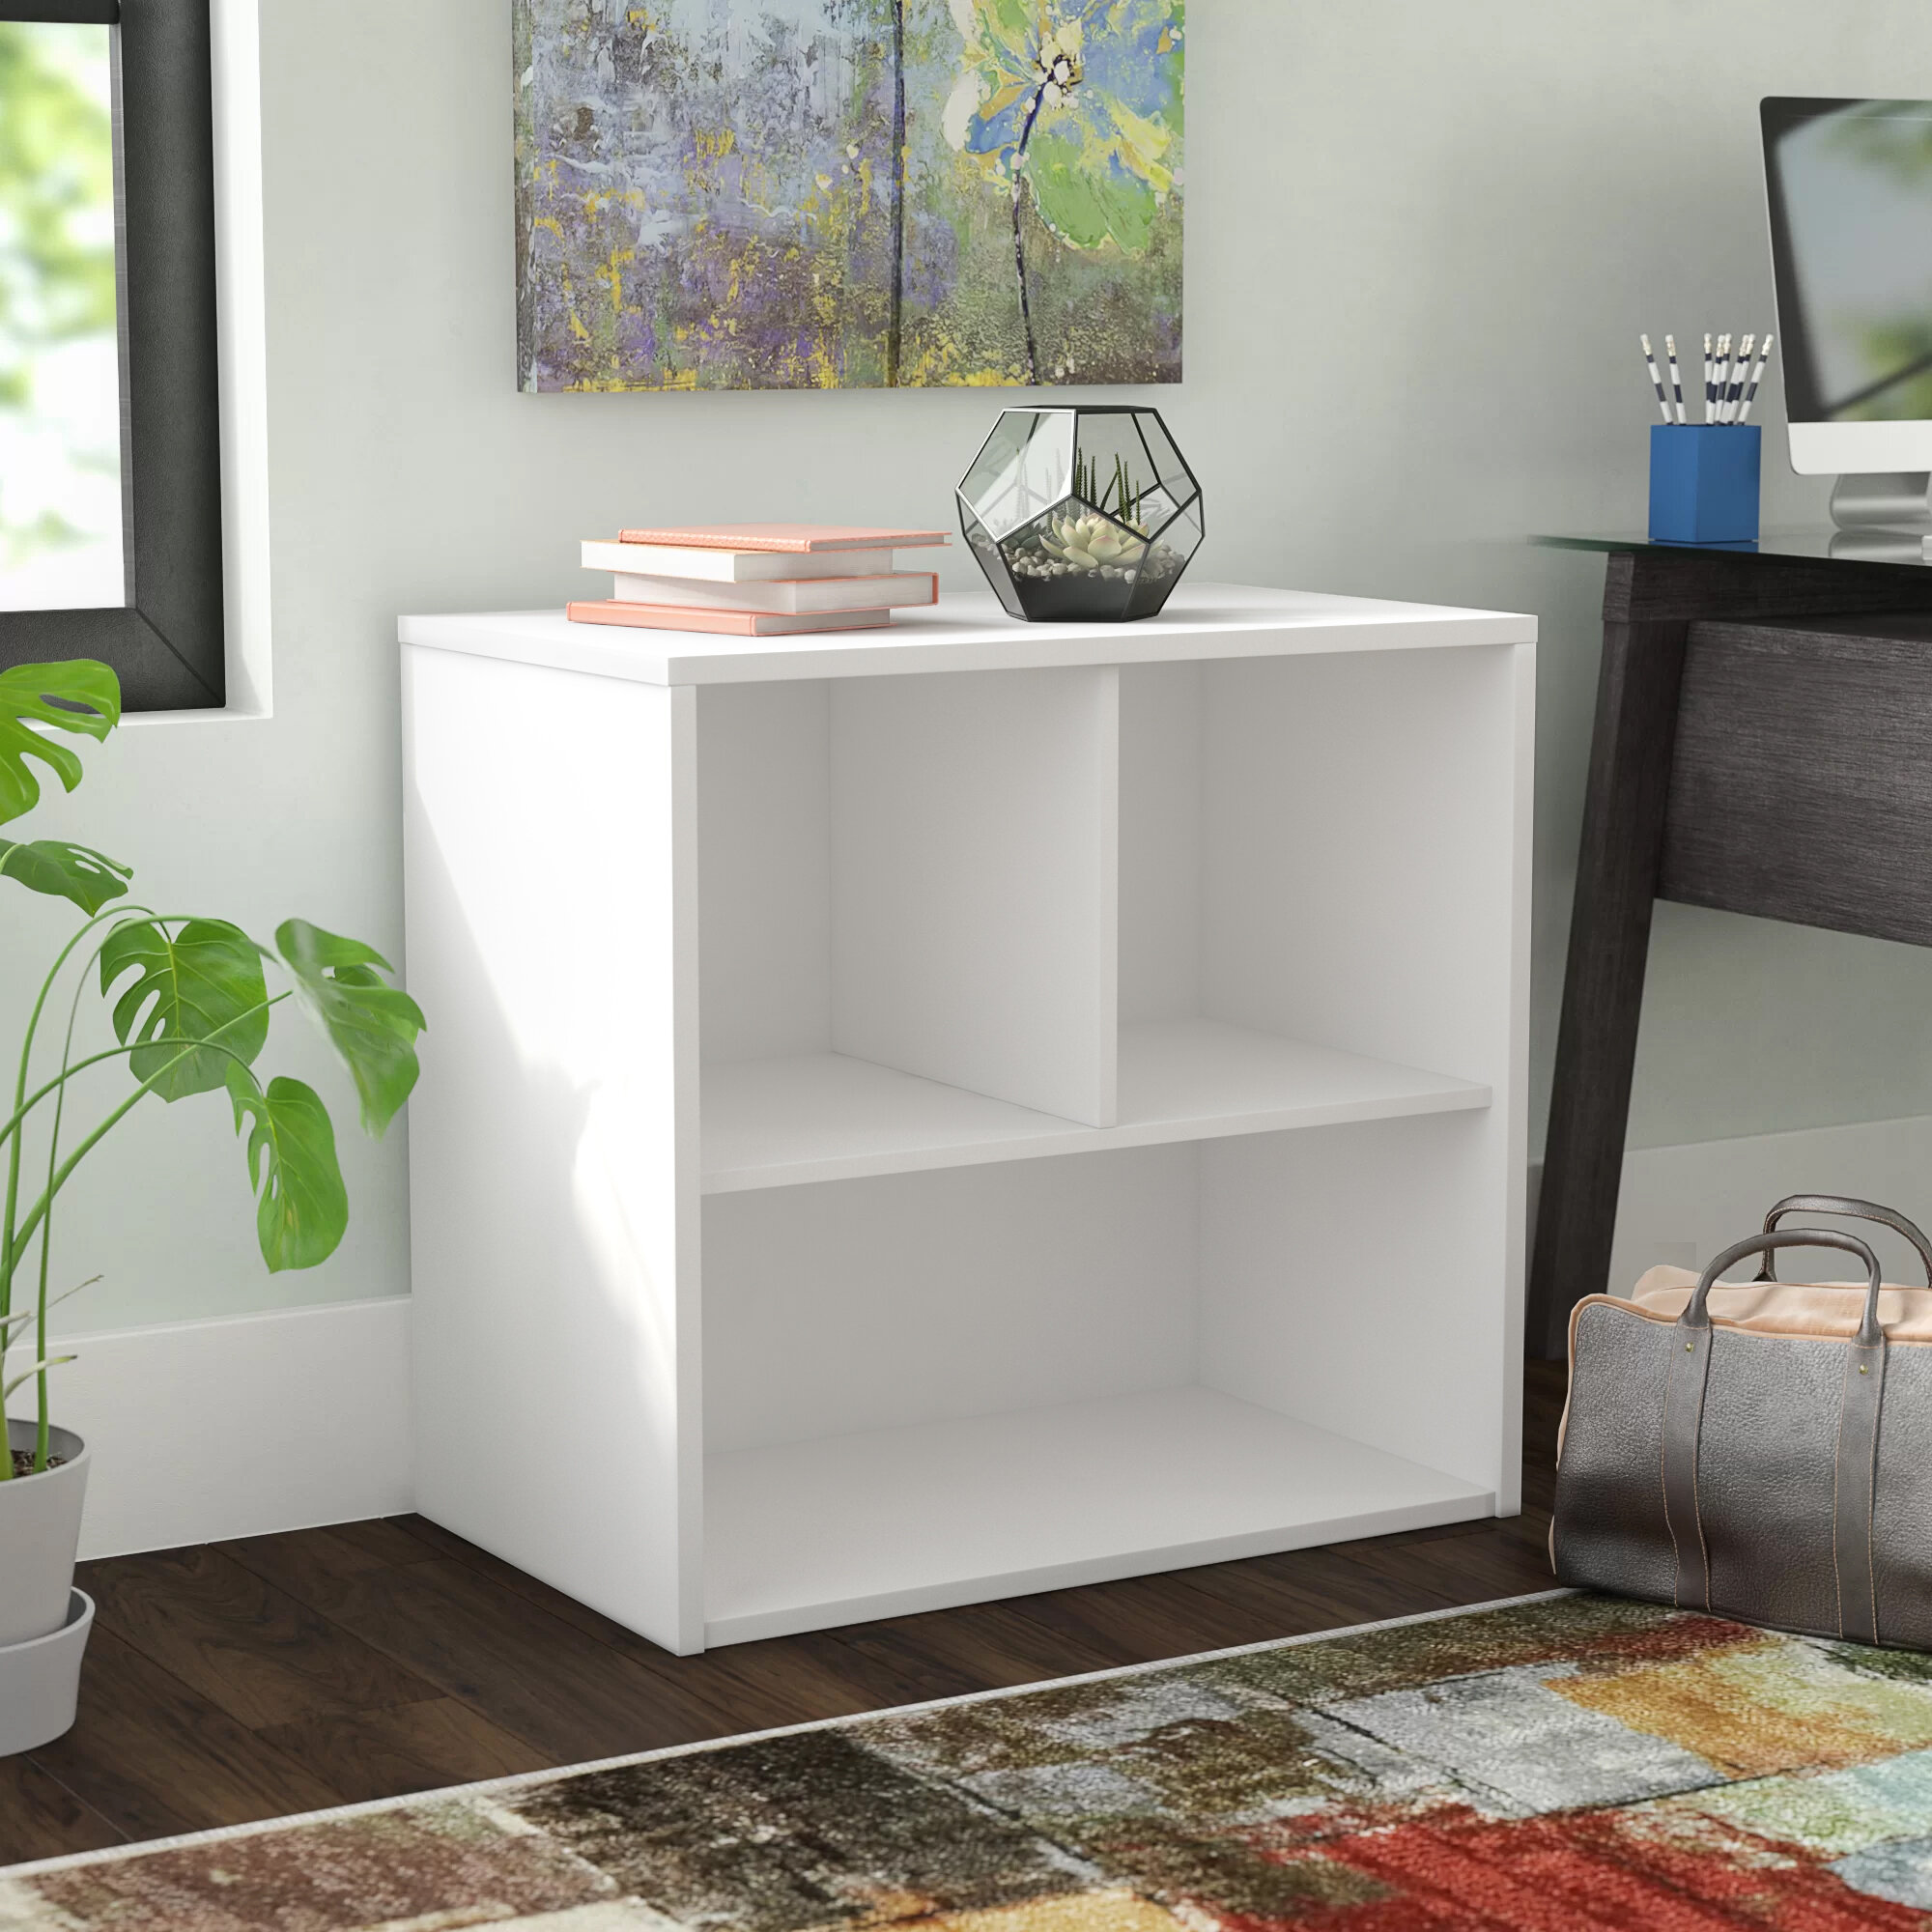 Beautiful Modern Lokken 3 Cube Shelves Ideal For Living Room For Books or Photo. 